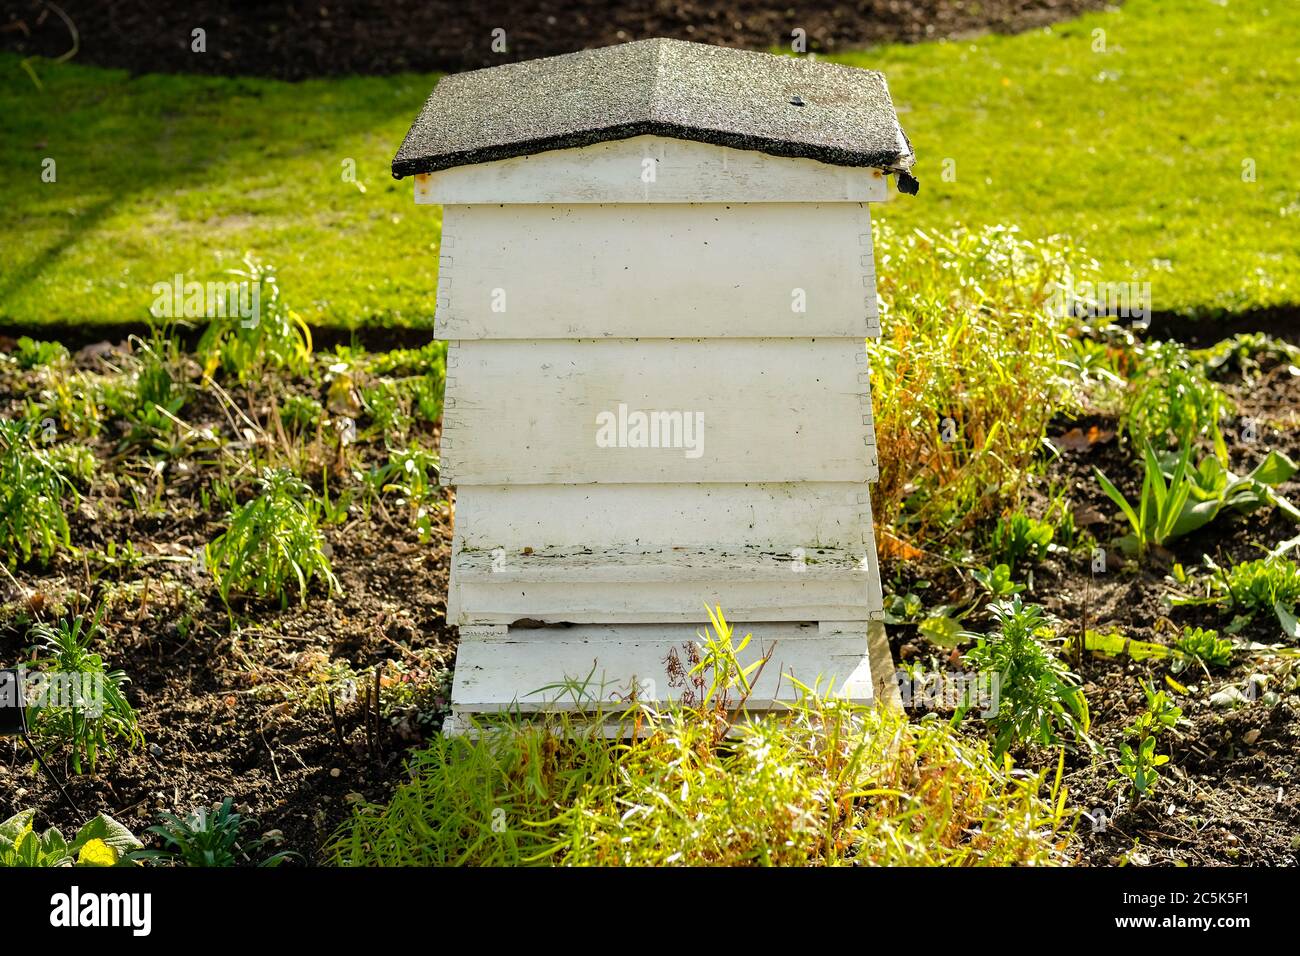 Grande ruche en bois vue située dans un grand jardin. La pelouse et les arbustes bien entretenus sont clairement visibles. Banque D'Images